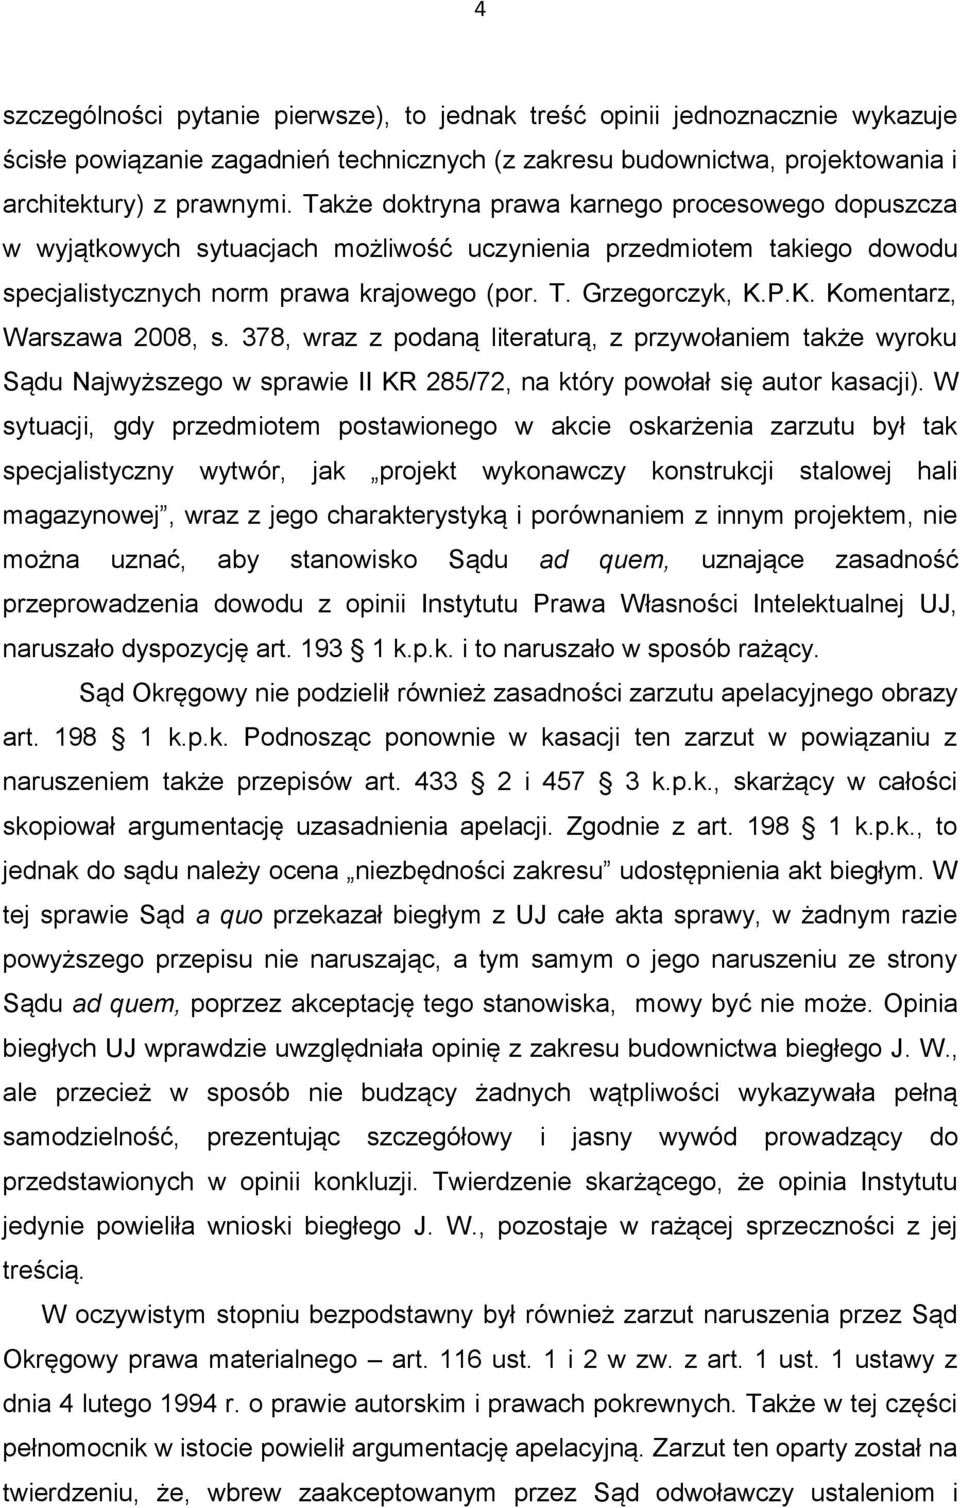 P.K. Komentarz, Warszawa 2008, s. 378, wraz z podaną literaturą, z przywołaniem także wyroku Sądu Najwyższego w sprawie II KR 285/72, na który powołał się autor kasacji).